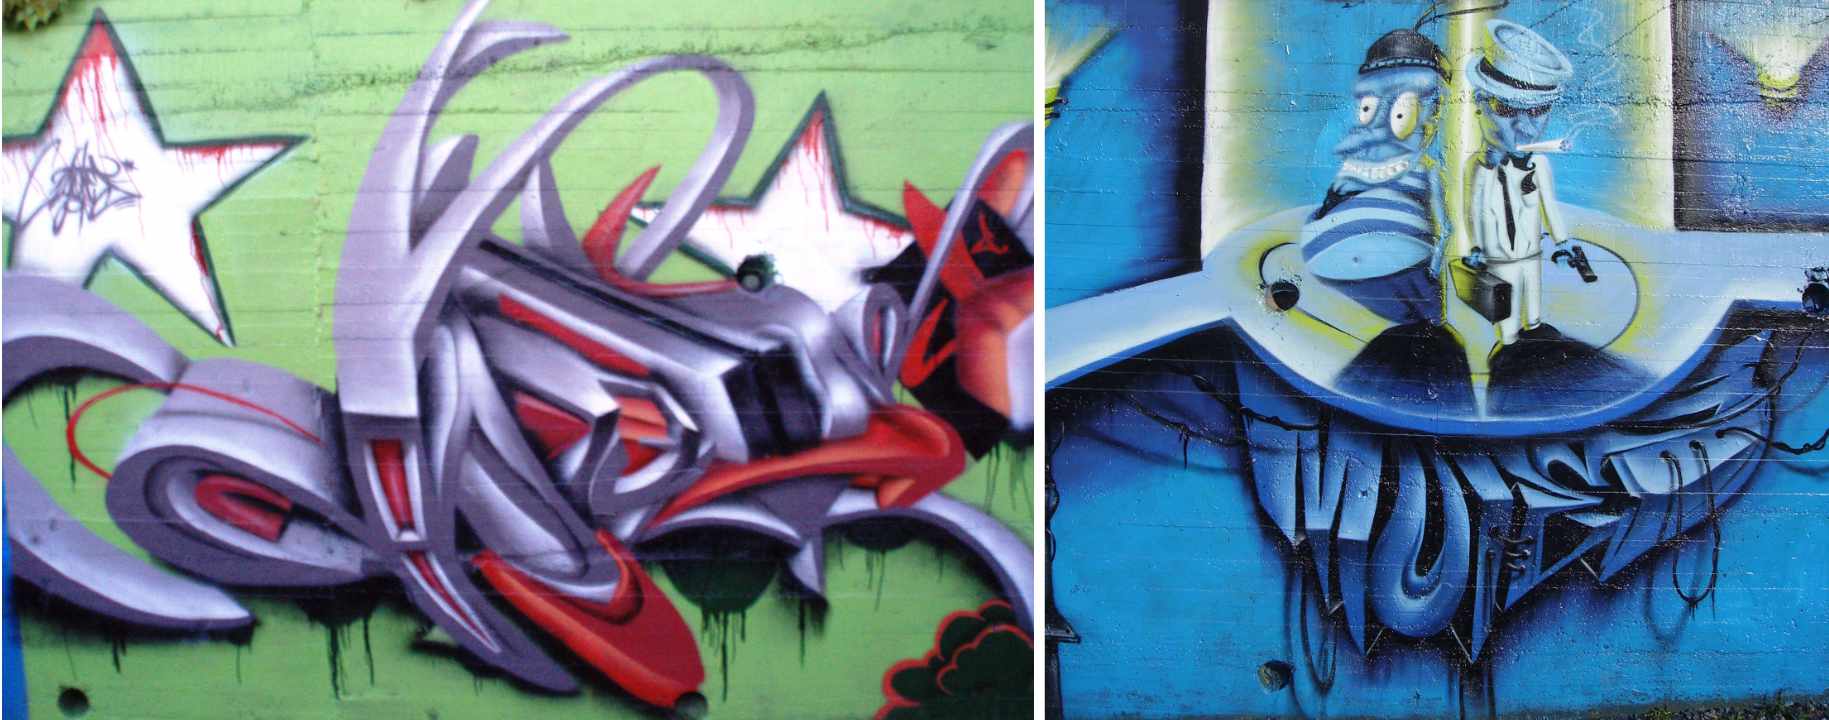 bublegumsr-graffiti-lugo